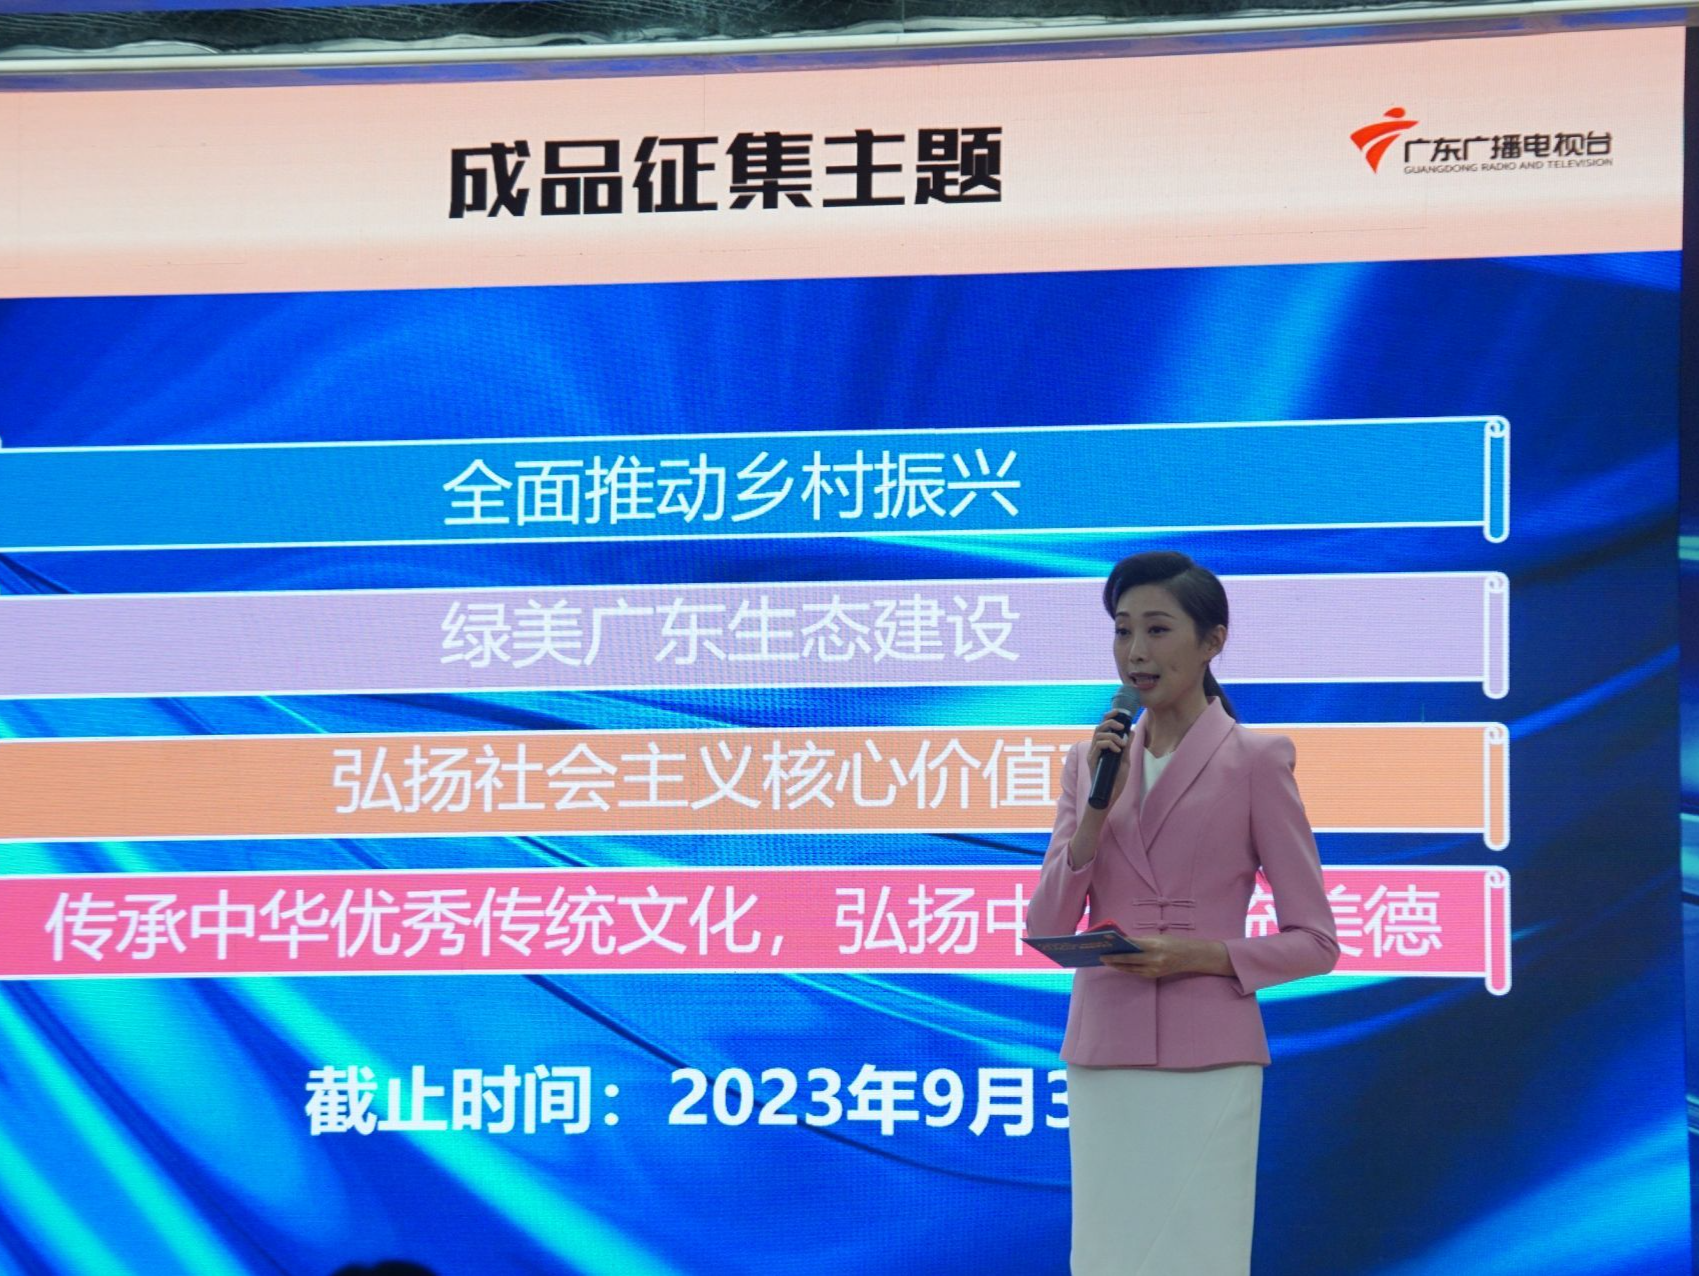 广东省2023年重大主题广播电视公益广告精品征评活动启动